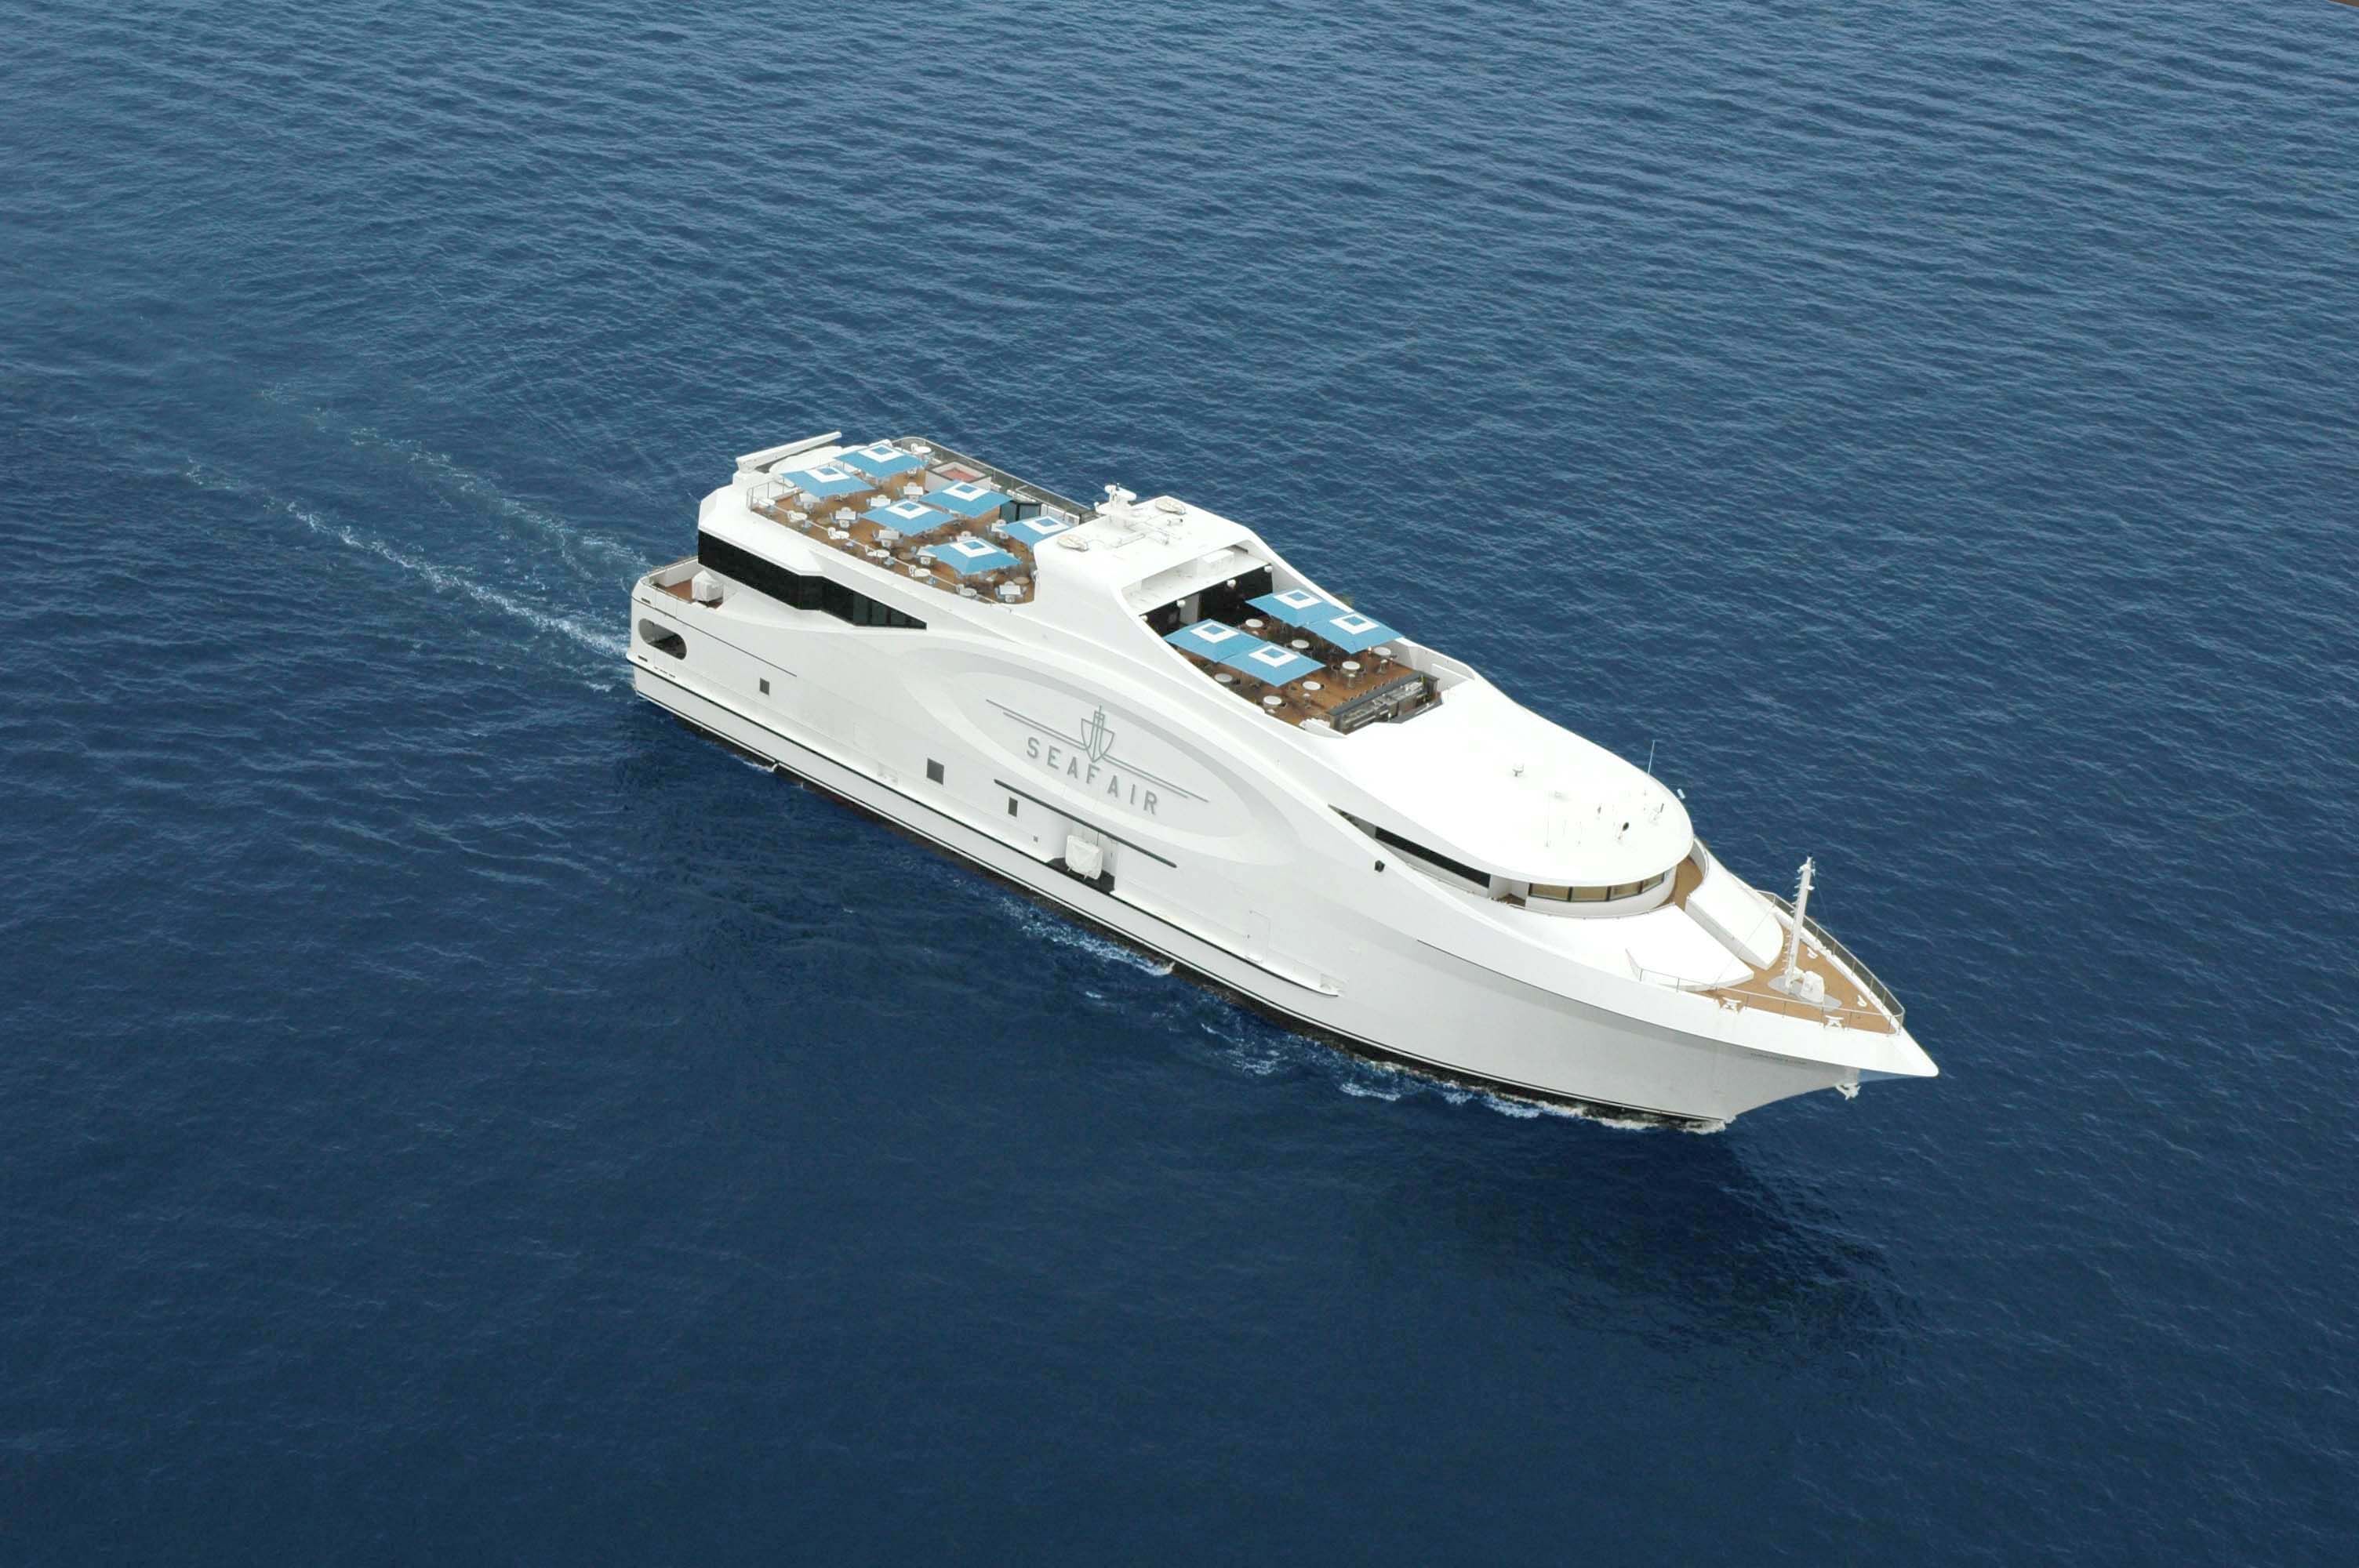 seafair mega yacht photos